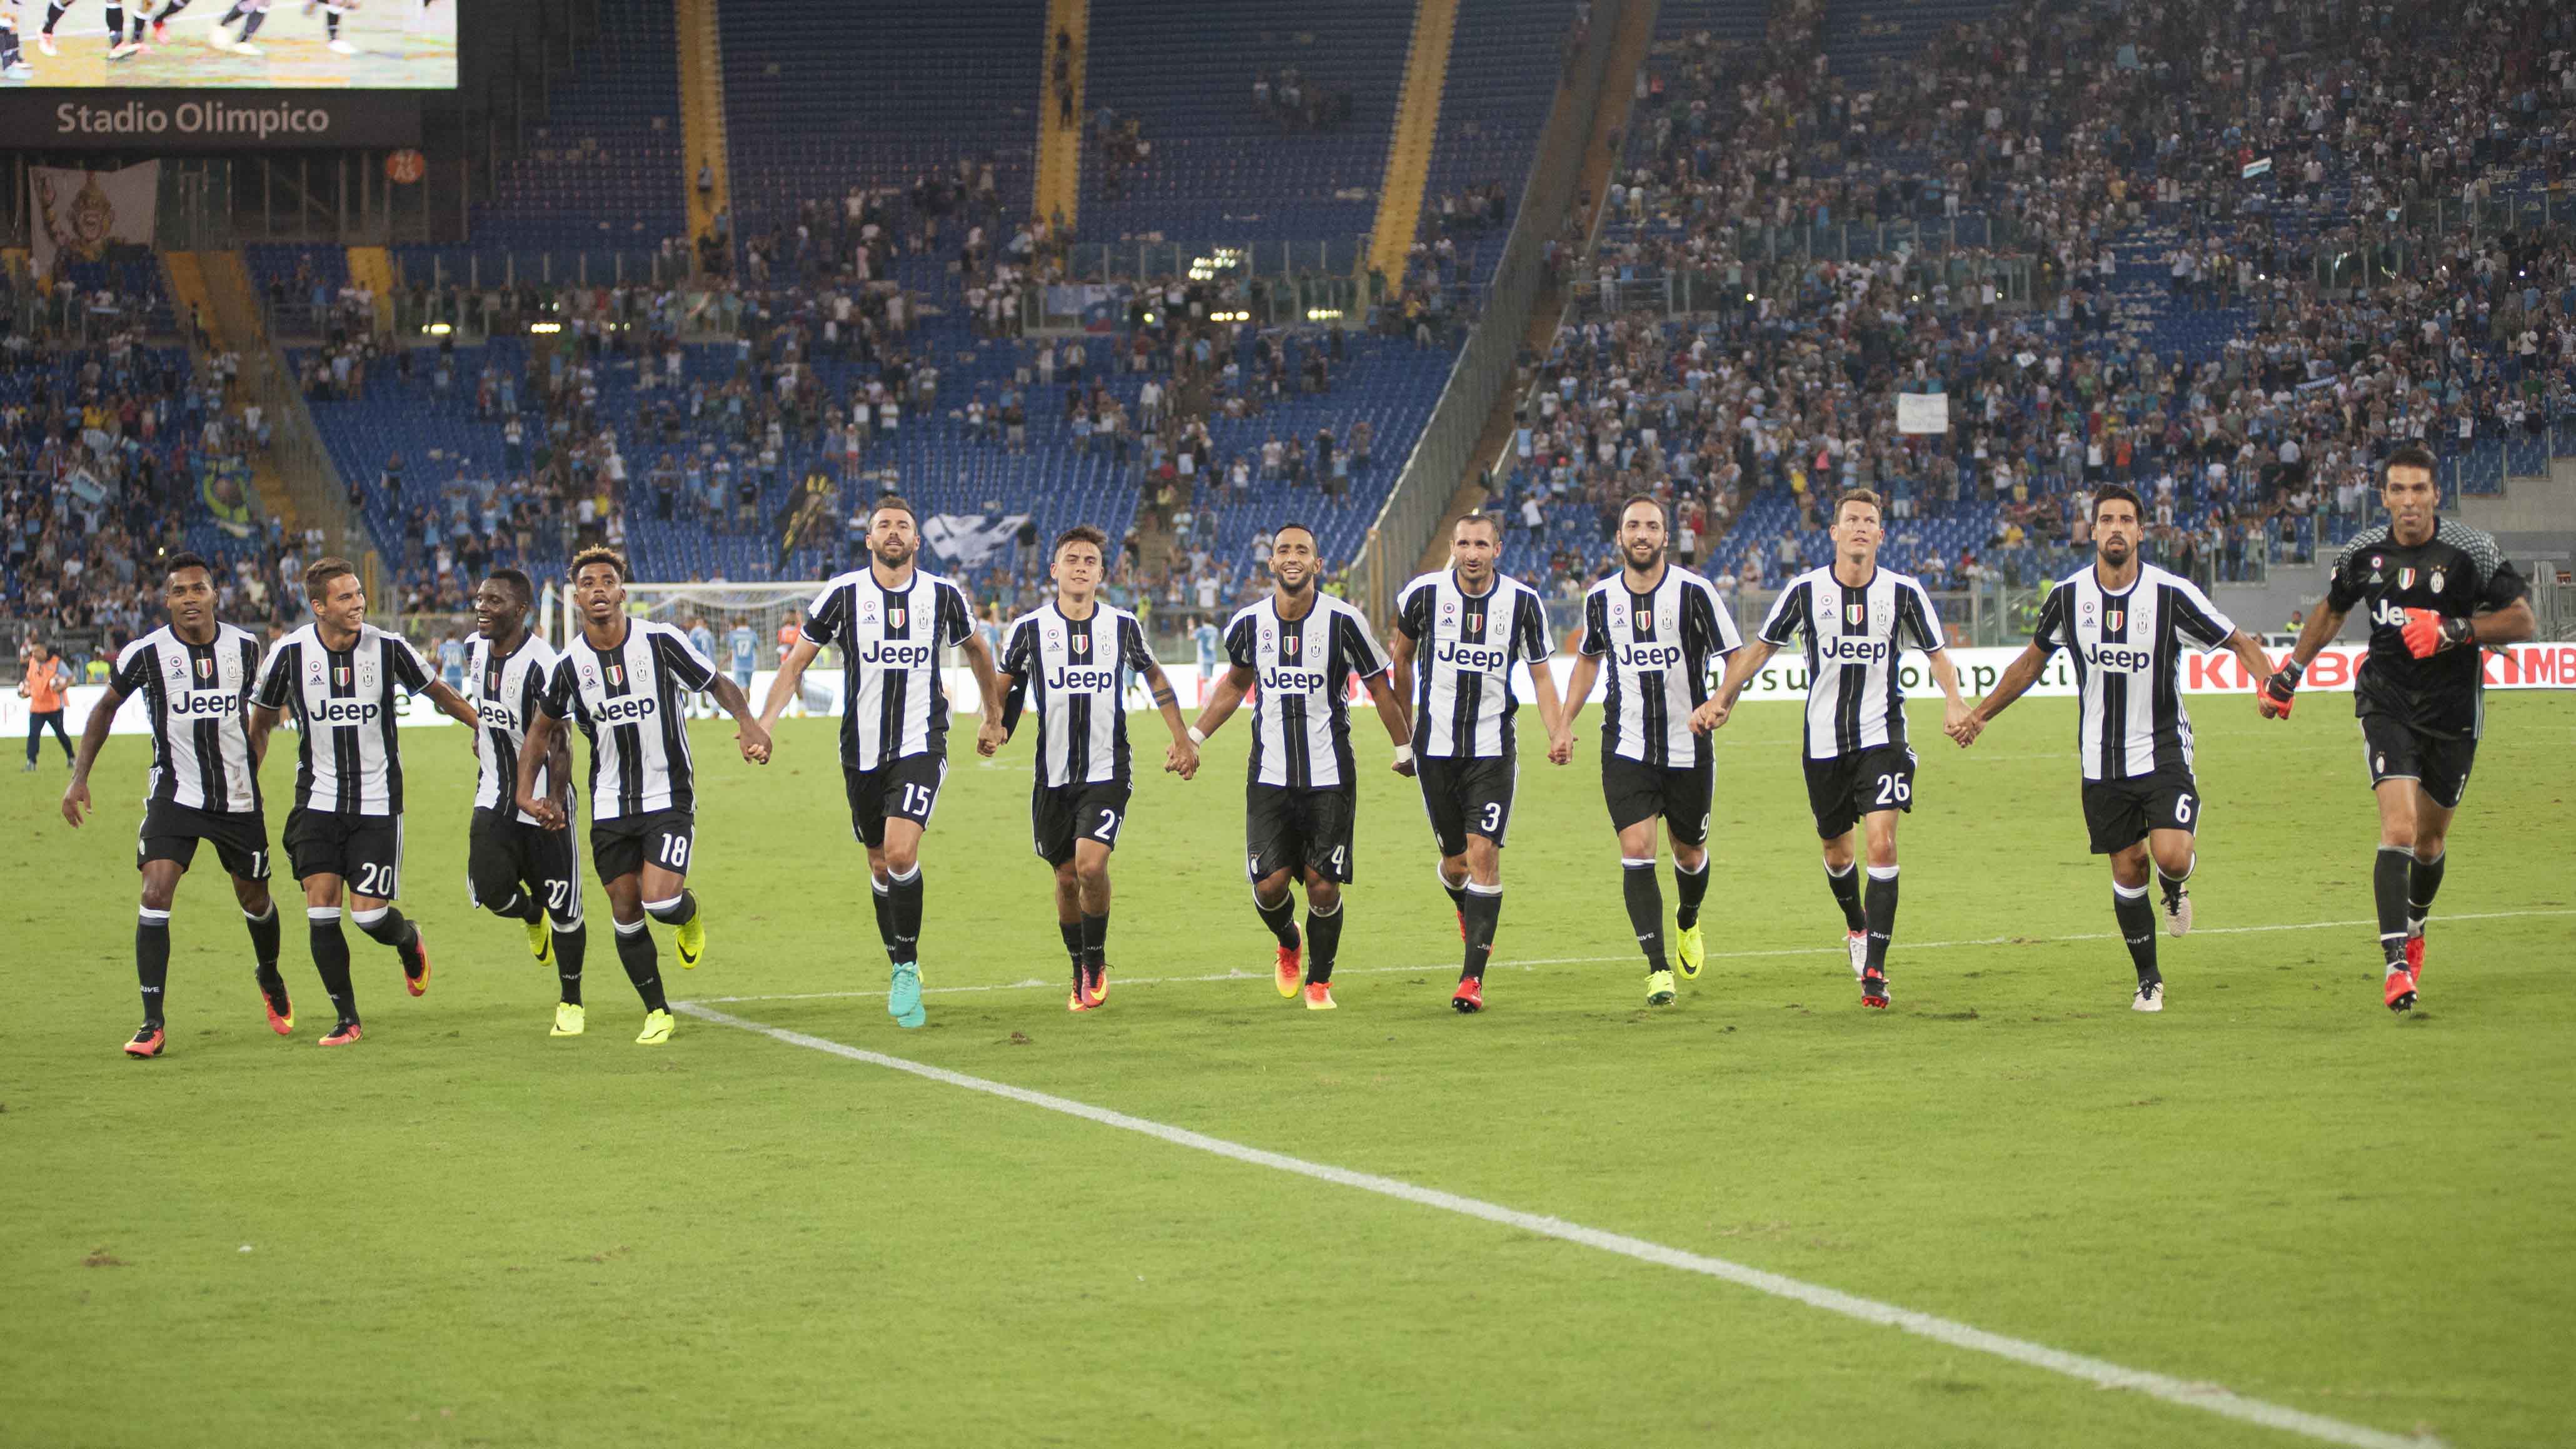 Febbre Champions: la Juventus questa sera a caccia dei tre punti a Lione